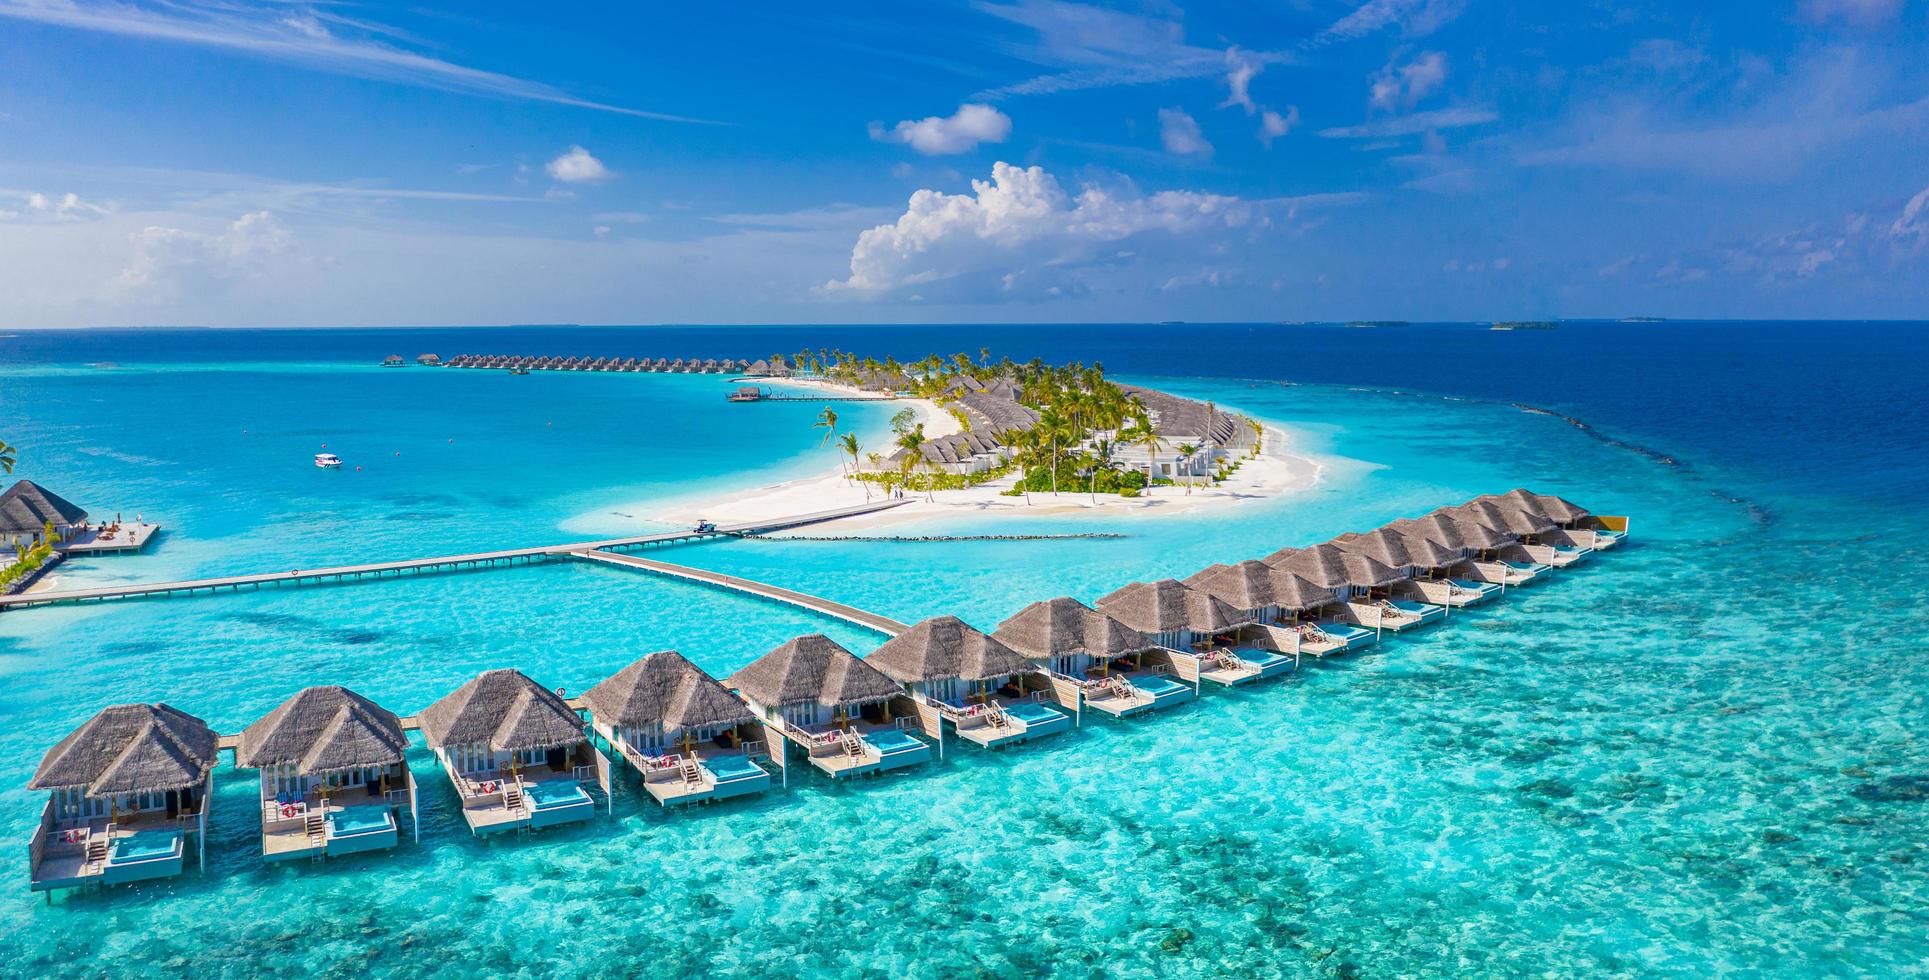 19.18.19 - zuidelijke mannelijke atol, Malediven luchtfoto Malediven eiland, luxe watervilla's resort houten pier. prachtige hemel oceaan lagune strand. zomervakantie vakantie. paradijs luchtlandschap panorama foto